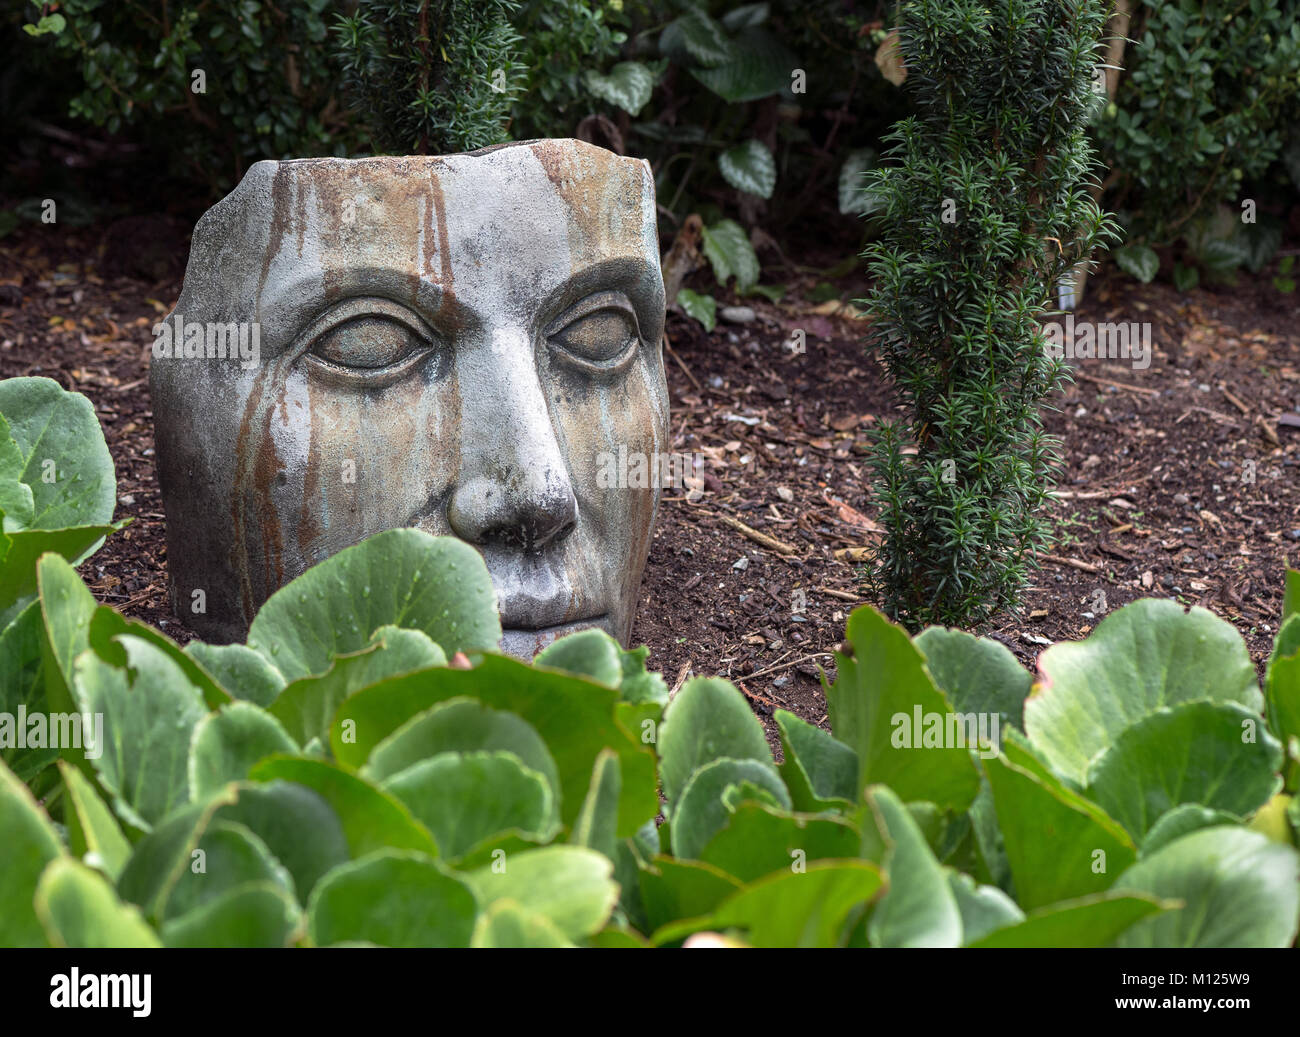 Masque de béton dans un jardin que l'art de jardin Banque D'Images